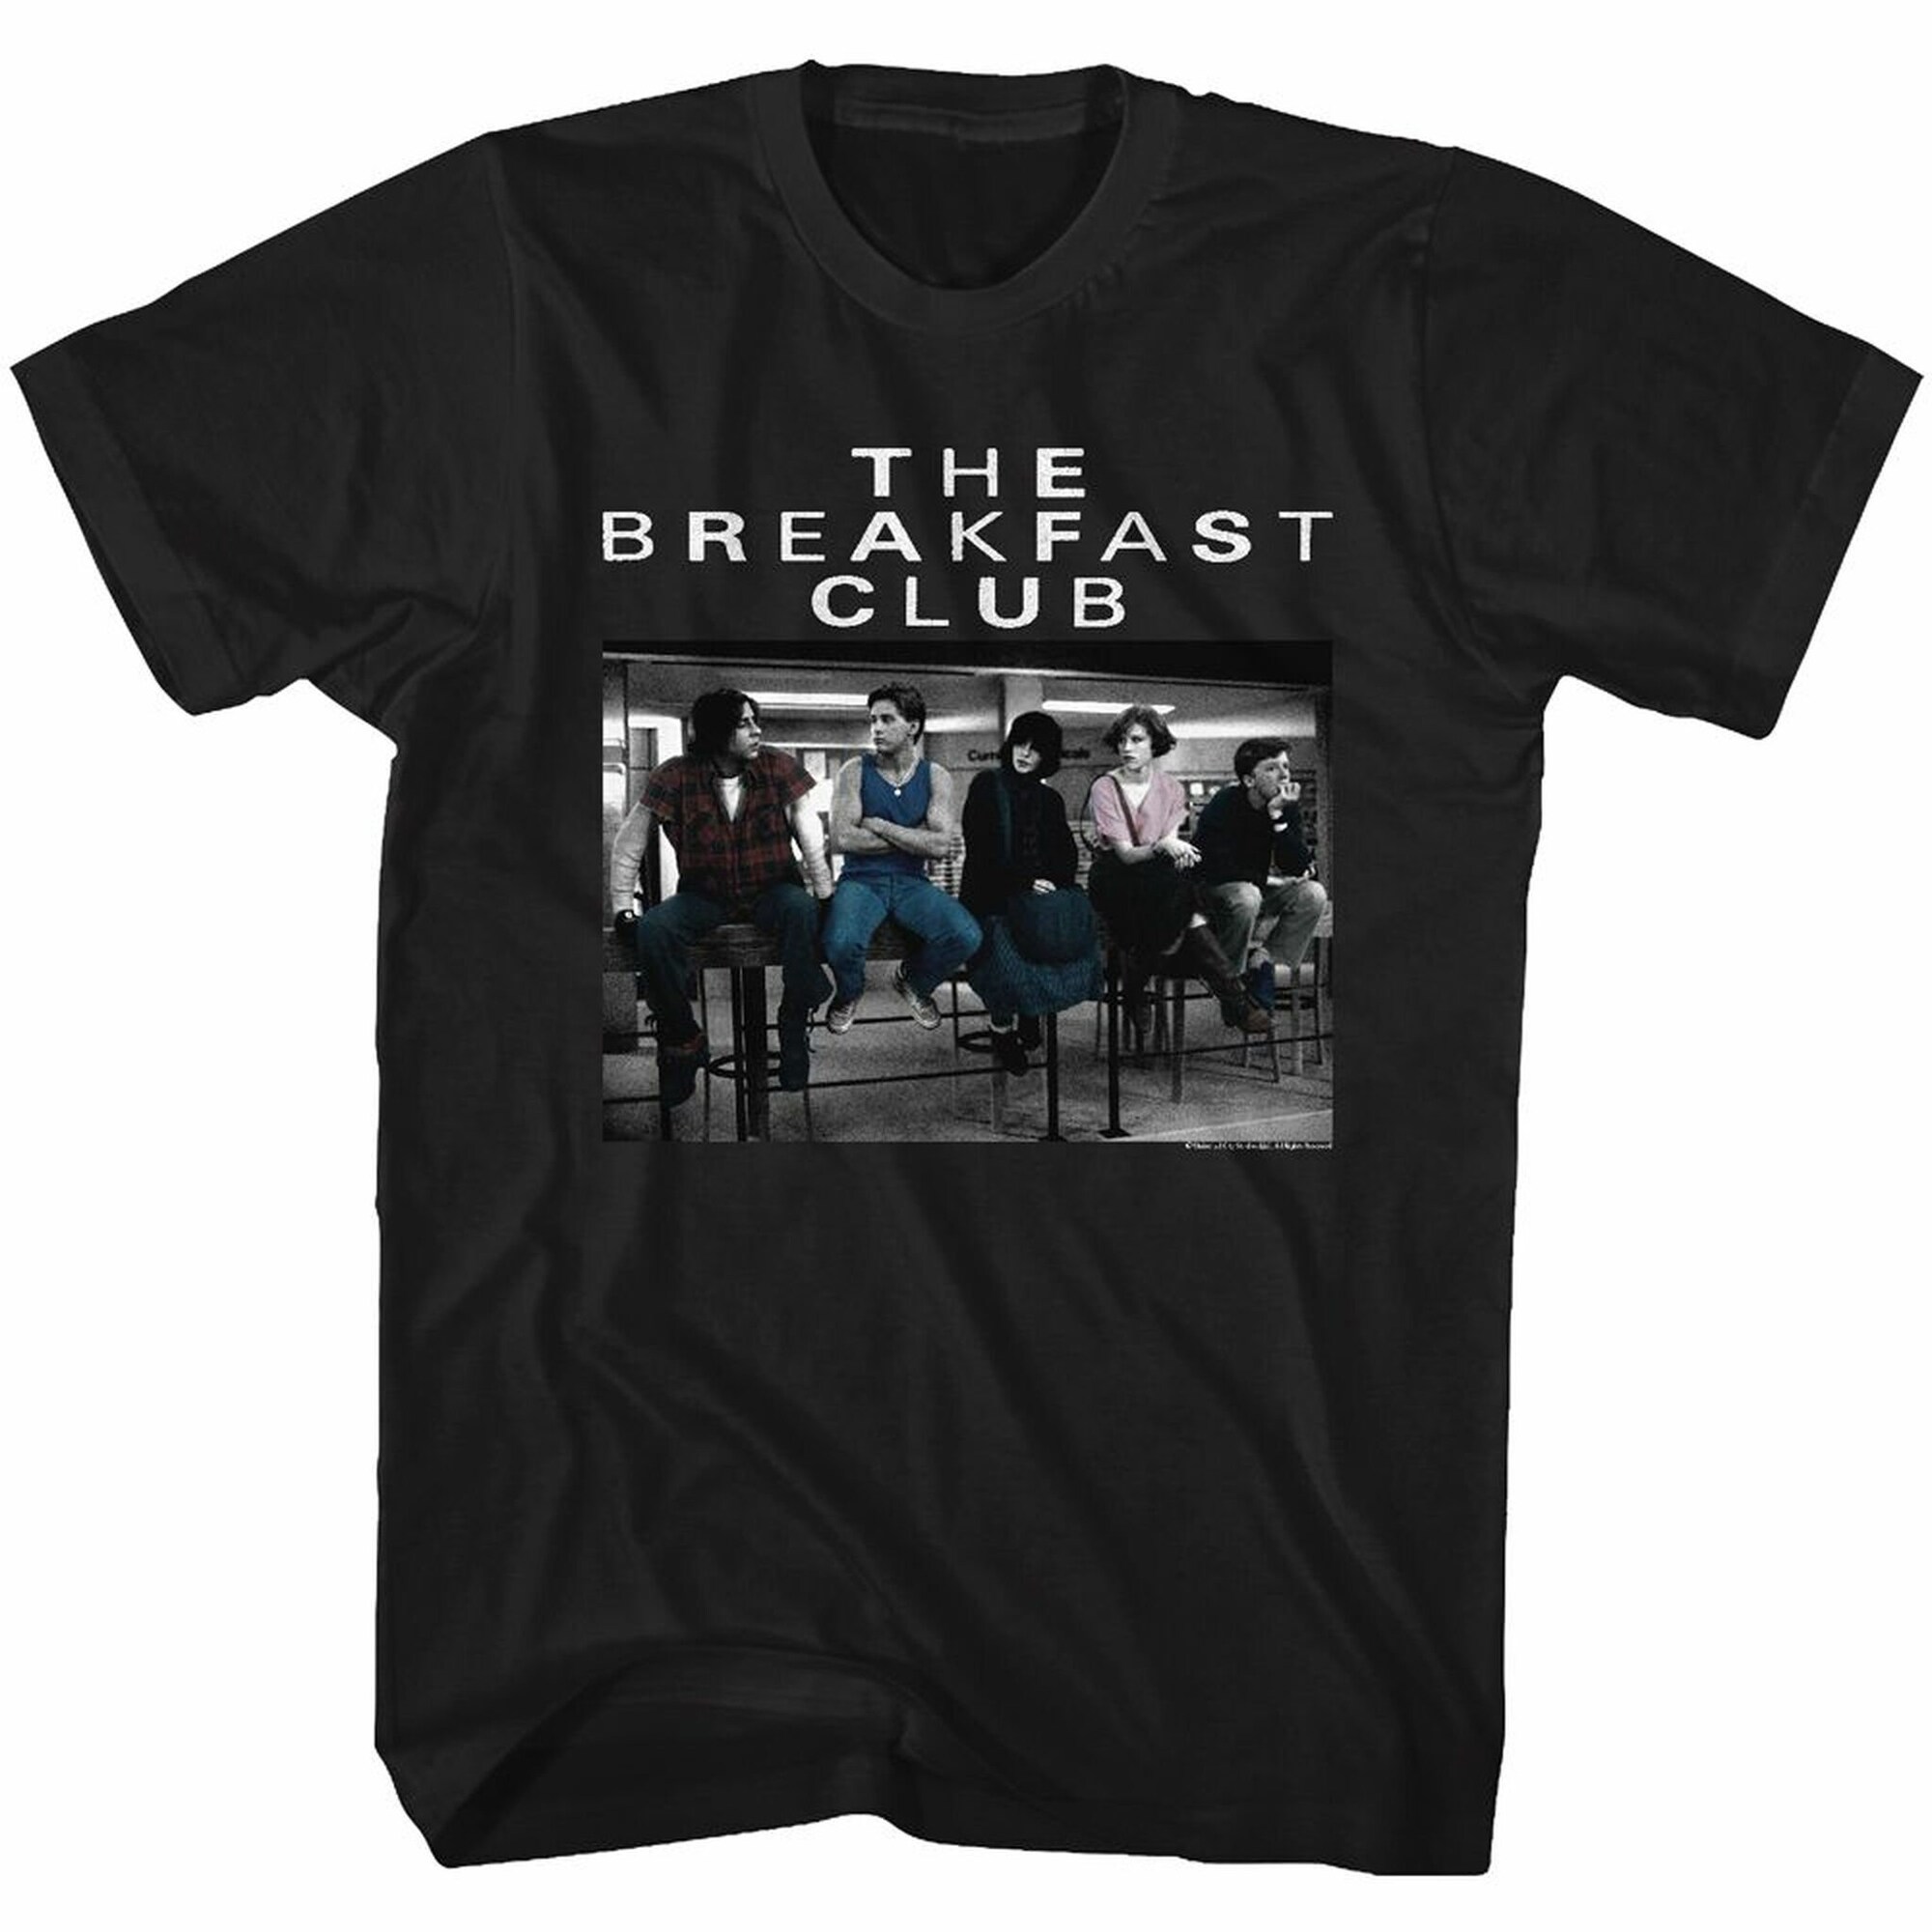 Breakfast Club Club Photo Adult T-Shirt